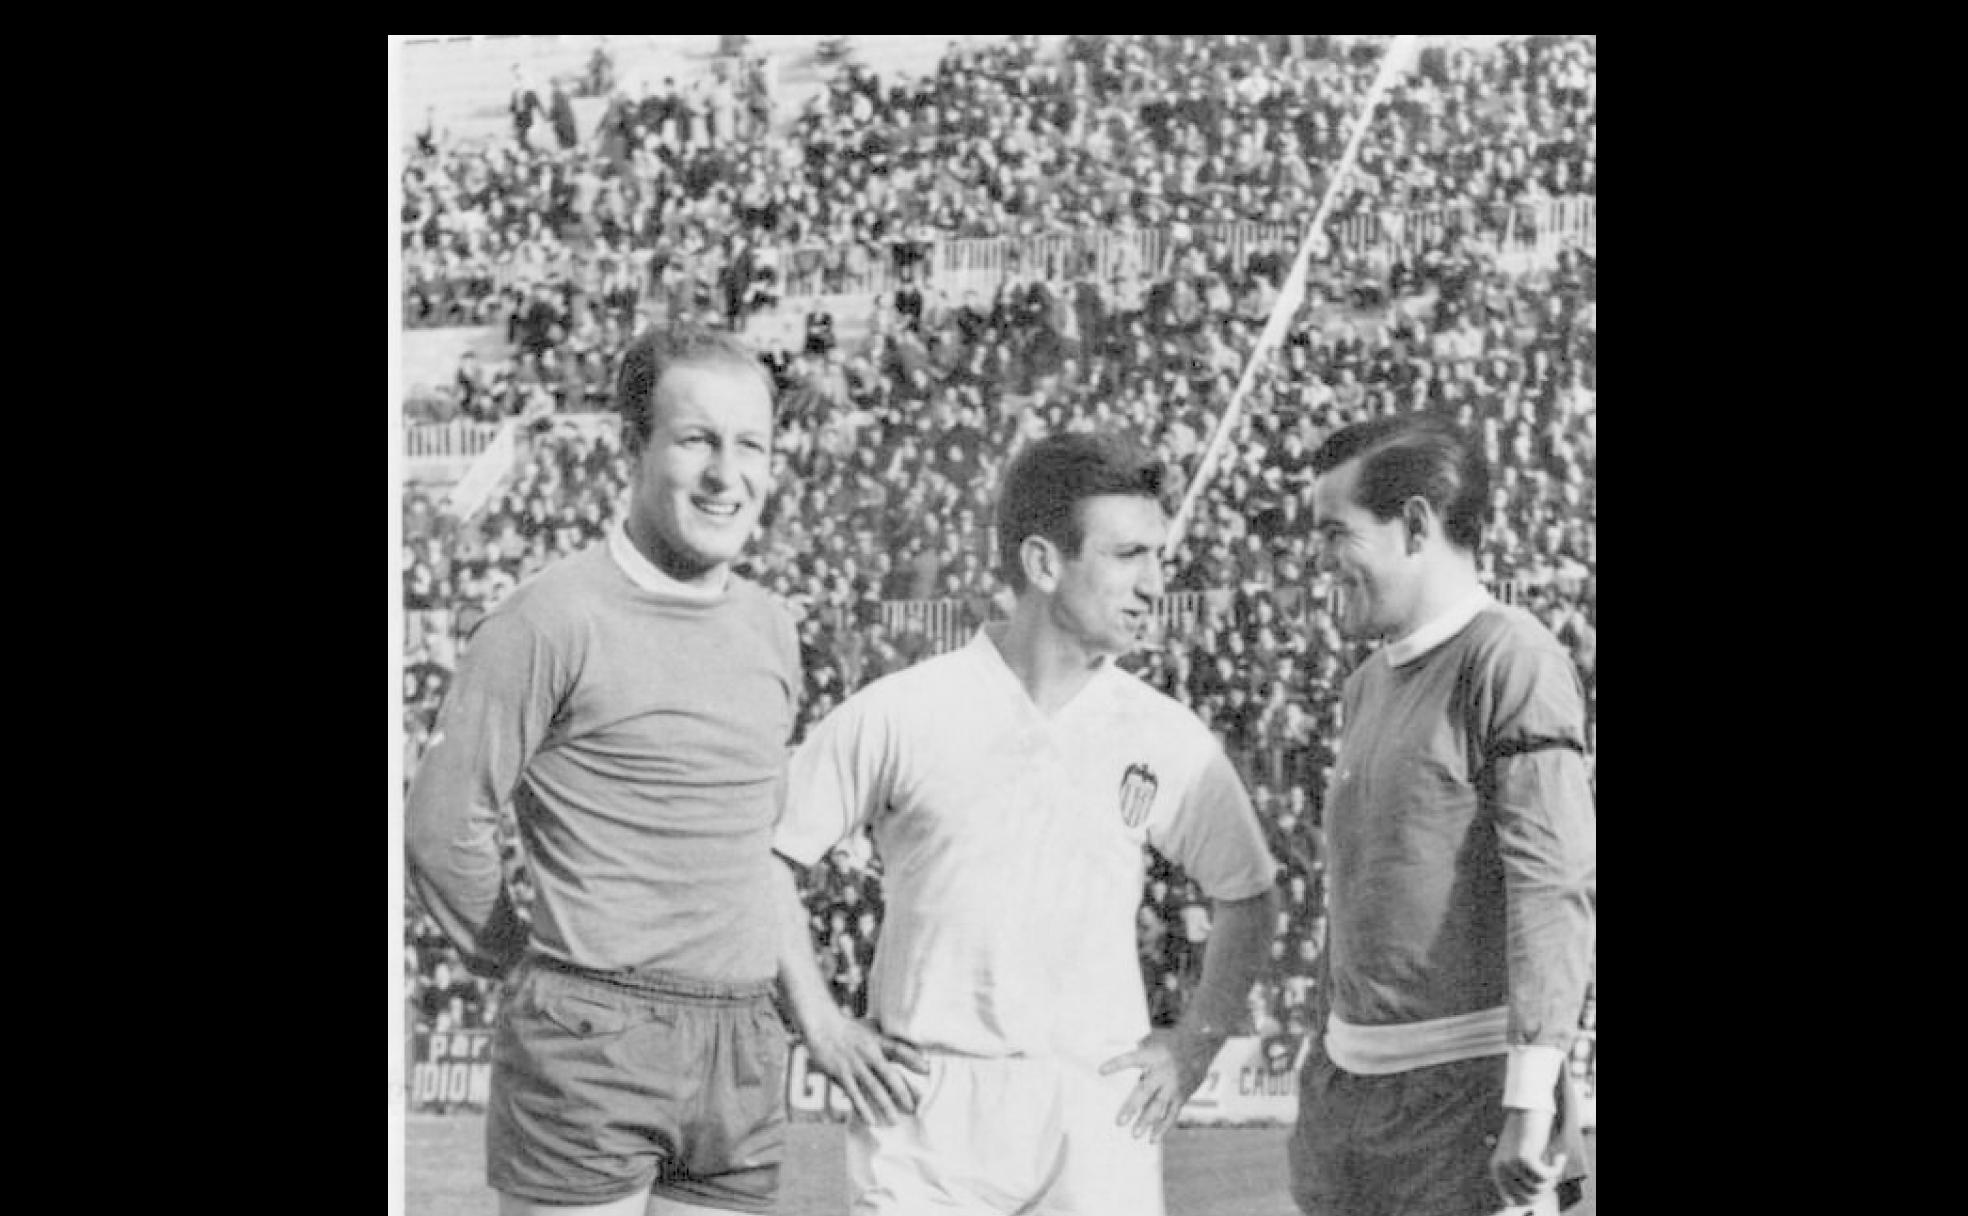 Curiosa fotografía tomada en Mestalla antes del Valencia-Valladolid que ganaron los levantinos por 5-3. Los tres protagonistas uruguayos de aquel partido, Pini, Héctor Núñez y Endériz, posan sonrientes antes del comienzo.